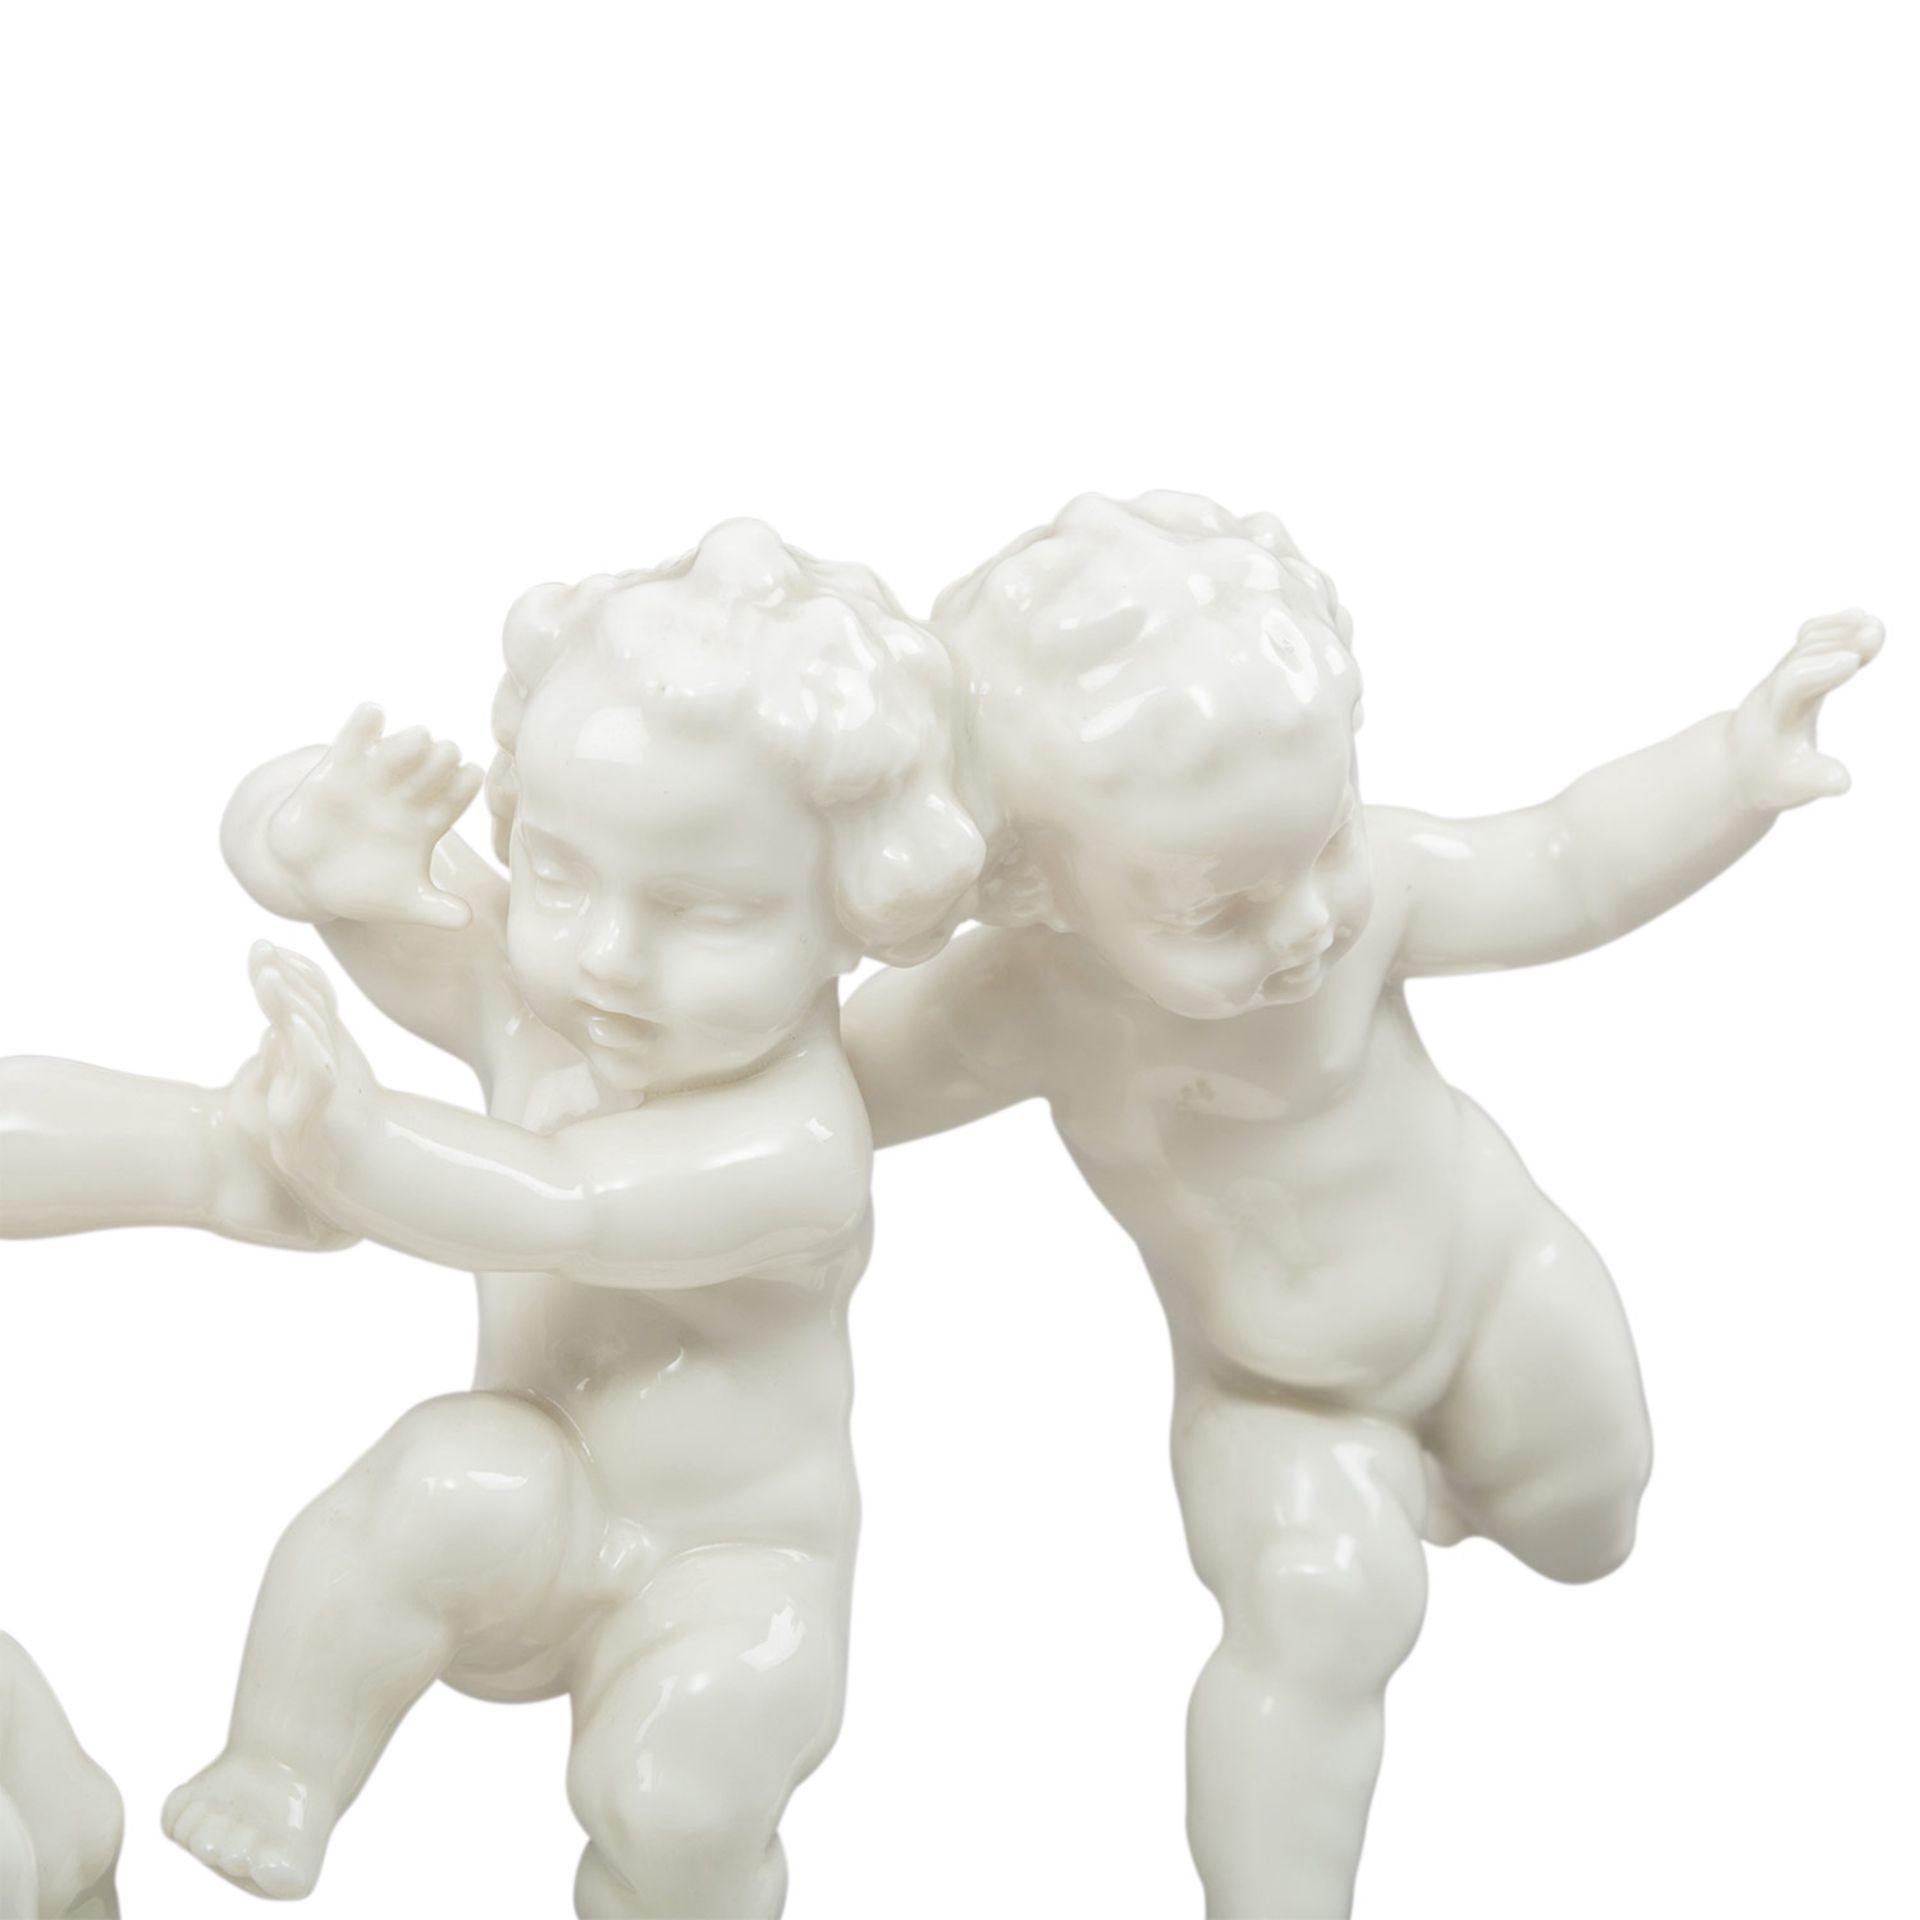 HUTSCHENREUTHER Figurengruppe '3 spielende Kinder', Marke von 1955-1968. Weißporzellan partiell - Image 2 of 4